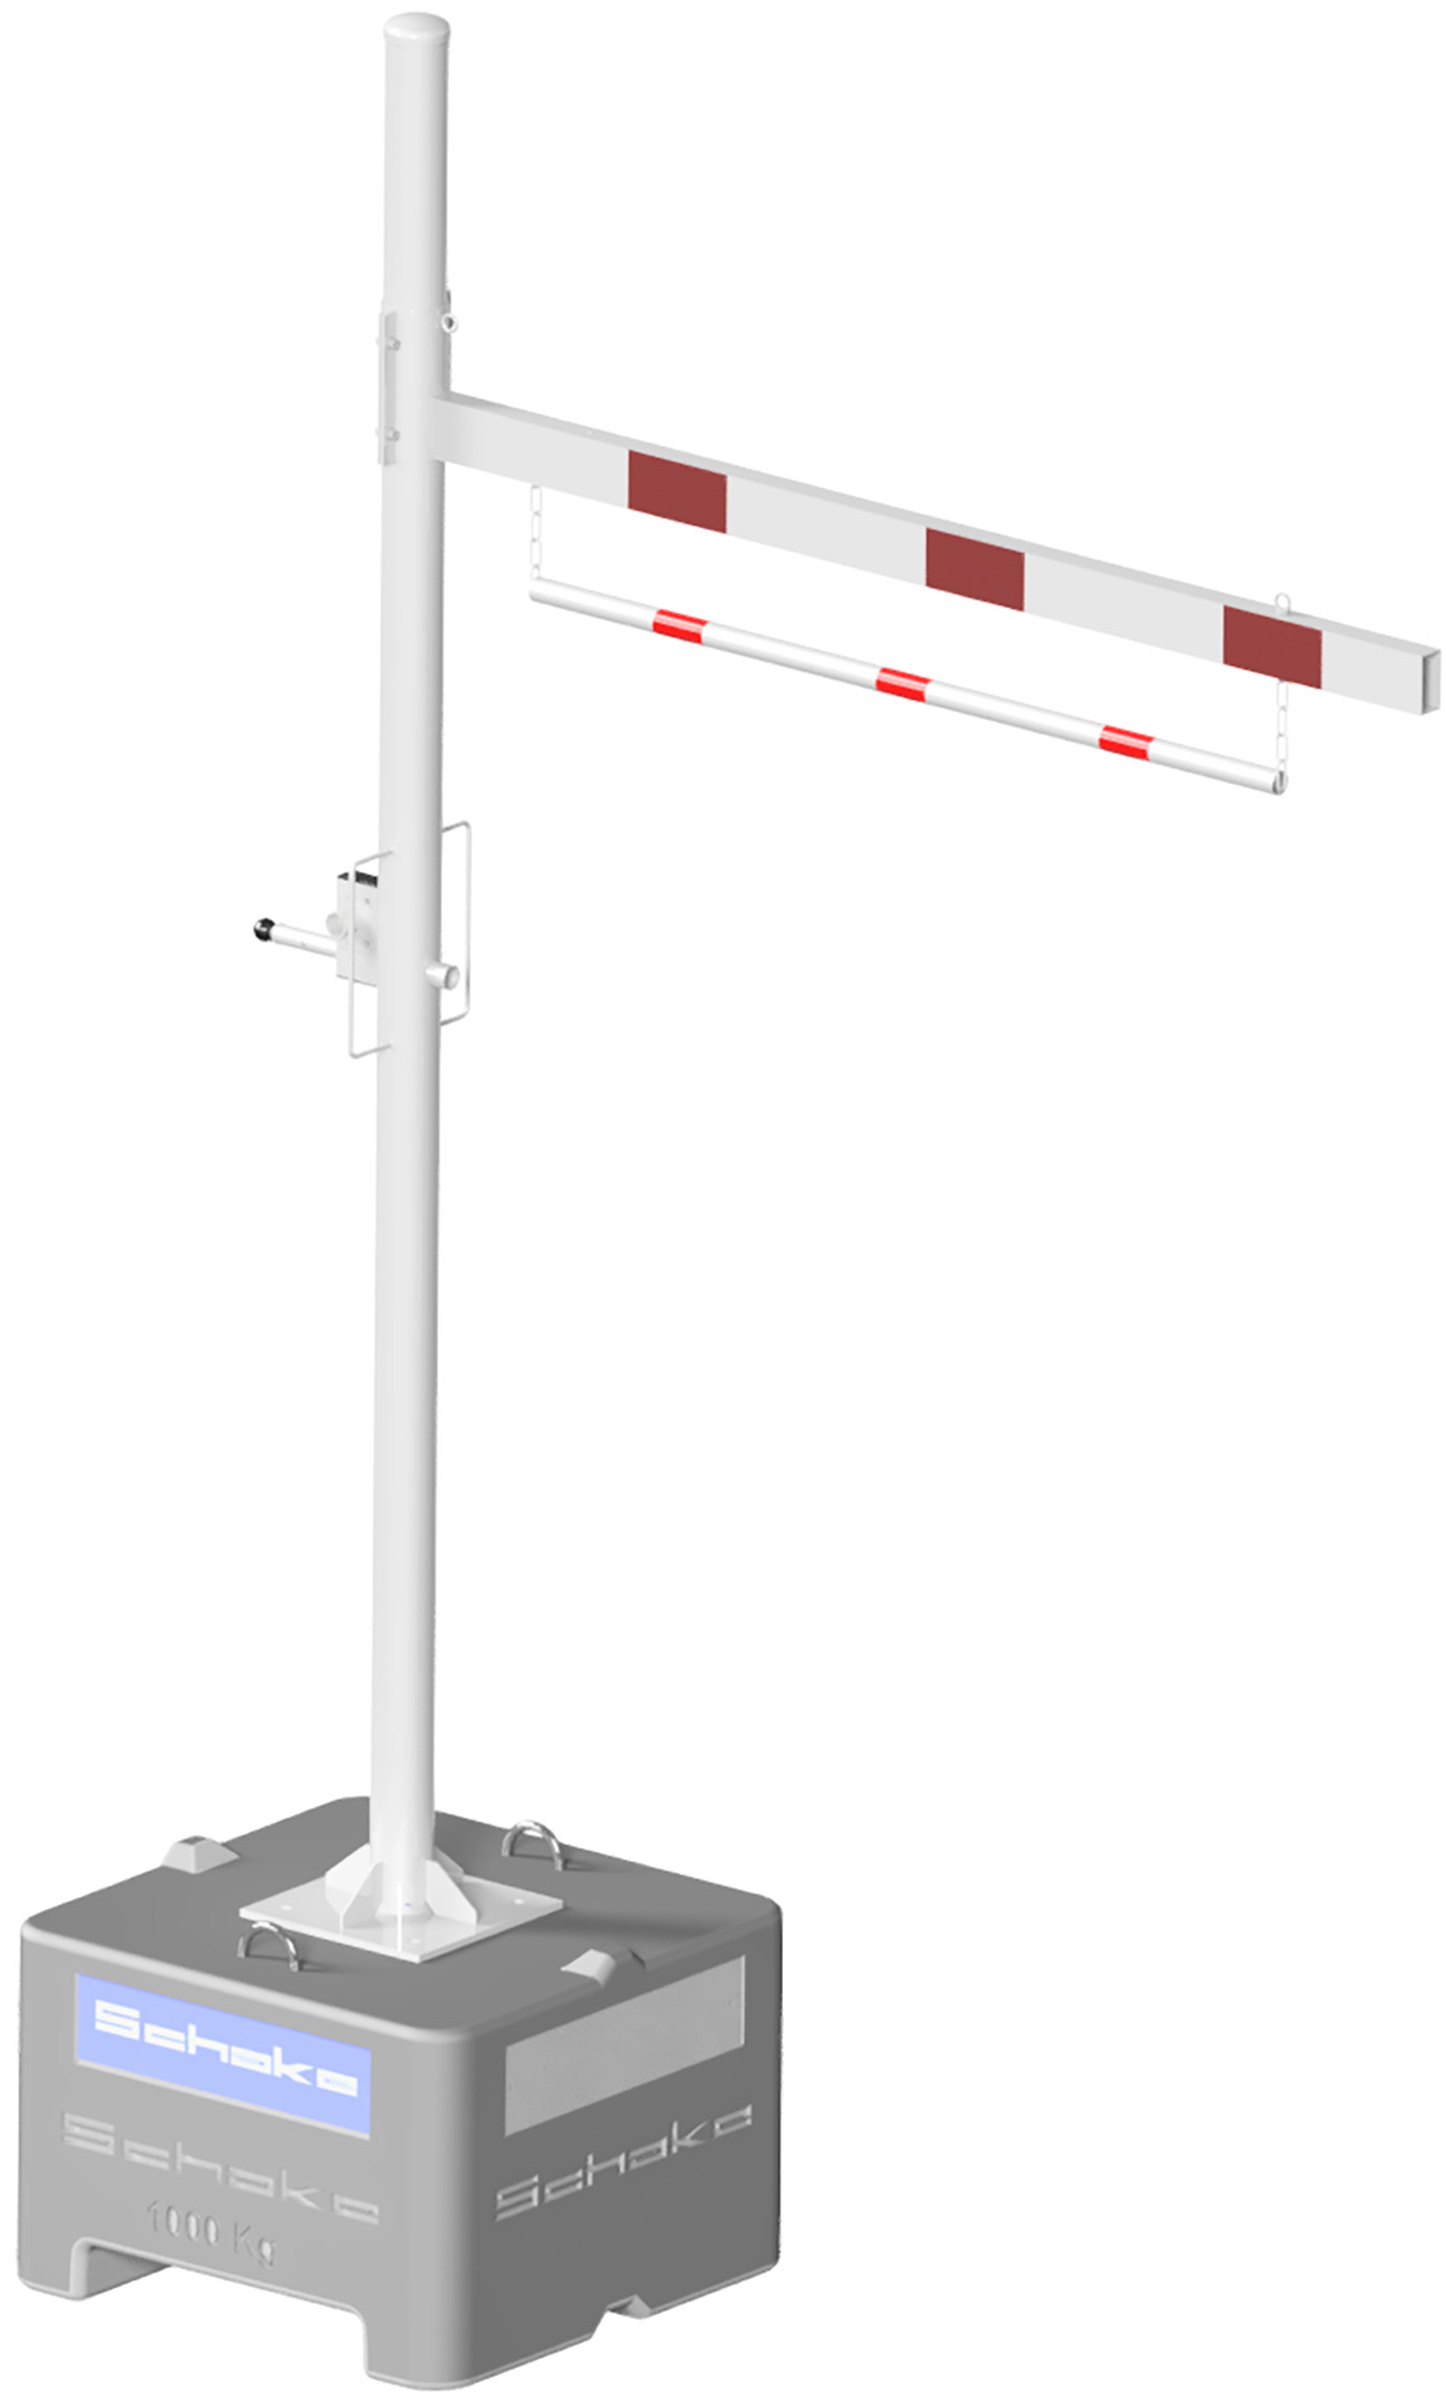 Schake Höhenbegrenzer variabel Mobil - 1 Drehpfosten Stahl Ø 102 mm weiß | rot Barriere mobil mit Dübelbefestigung für Beton-Aufstellvorrichtung und verstellbarer Durchfahrtshöhe - verschiedene Ausführungen (SK-C-417.201VBPM) Bild-01